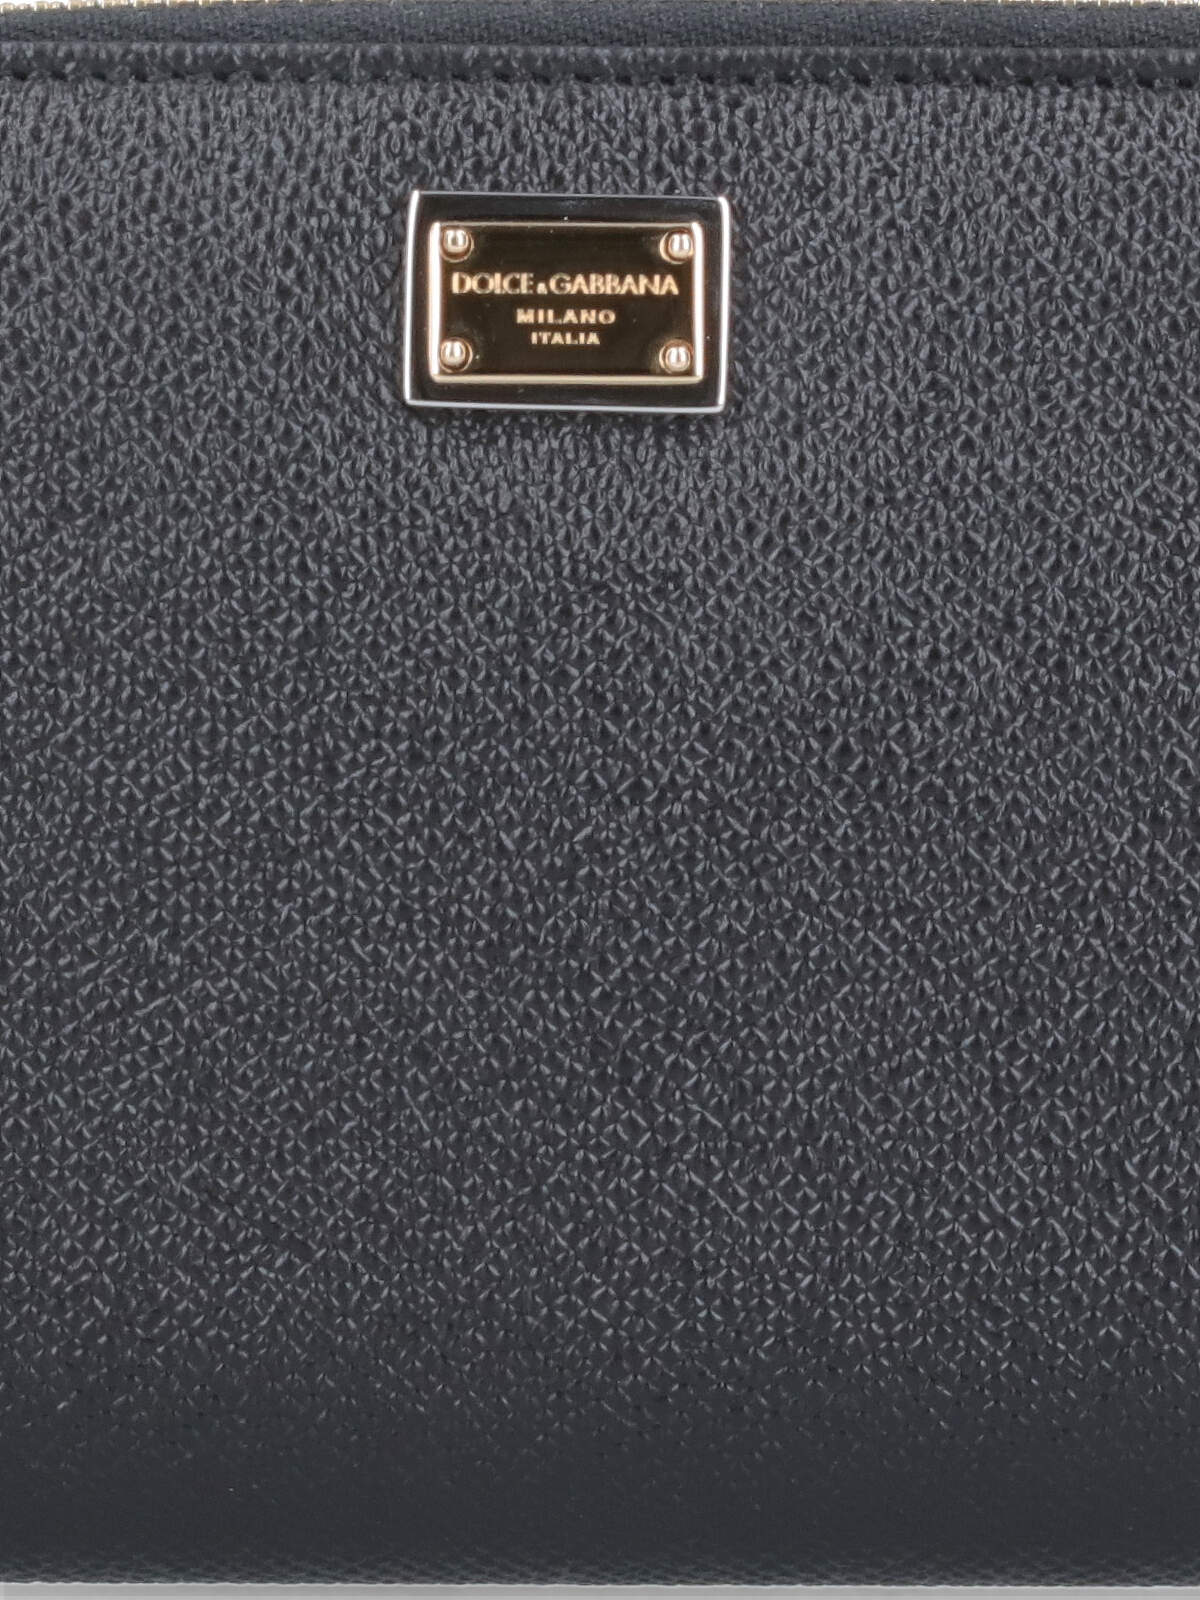 Shop Dolce & Gabbana Zip-around Wallet In Black